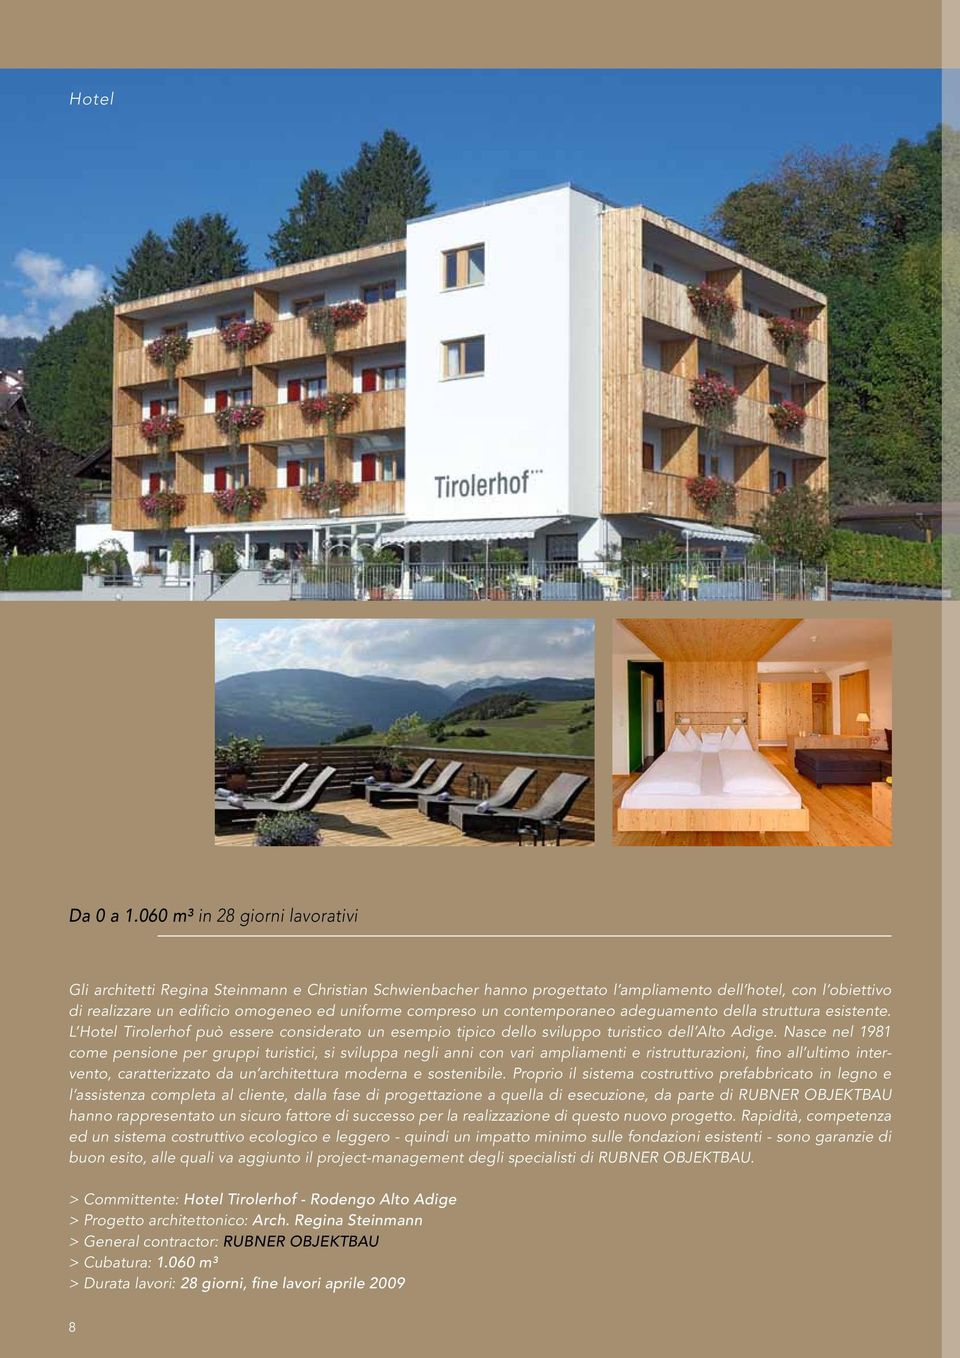 compreso un contemporaneo adeguamento della struttura esistente. L Hotel Tirolerhof può essere considerato un esempio tipico dello sviluppo turistico dell Alto Adige.